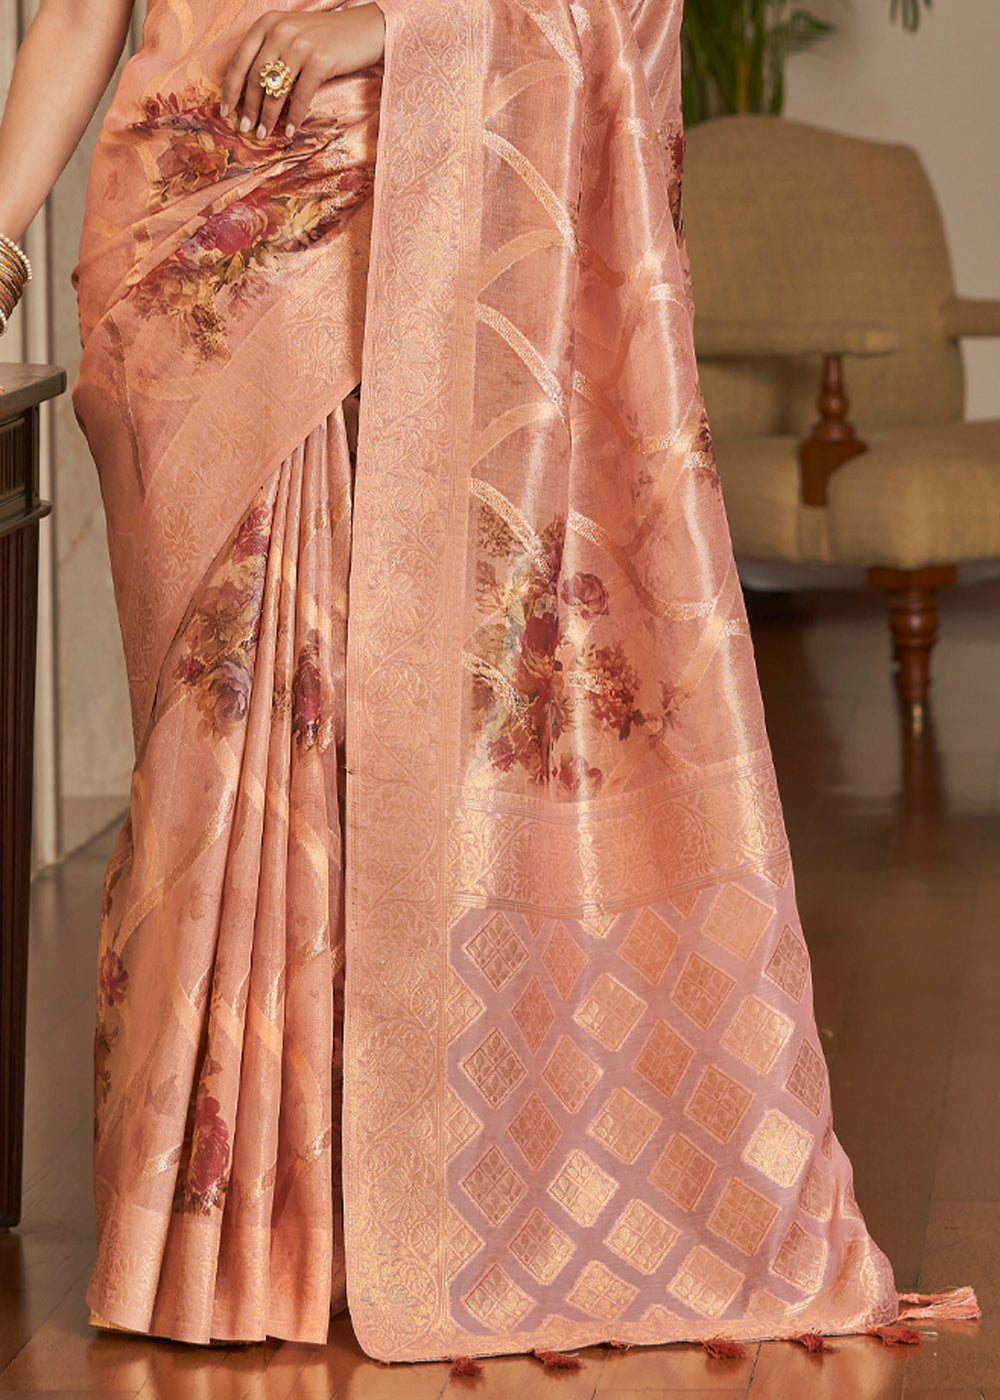 Buy MySilkLove Cashmere Peach Woven Banarasi Tissue Organza Silk Saree Online